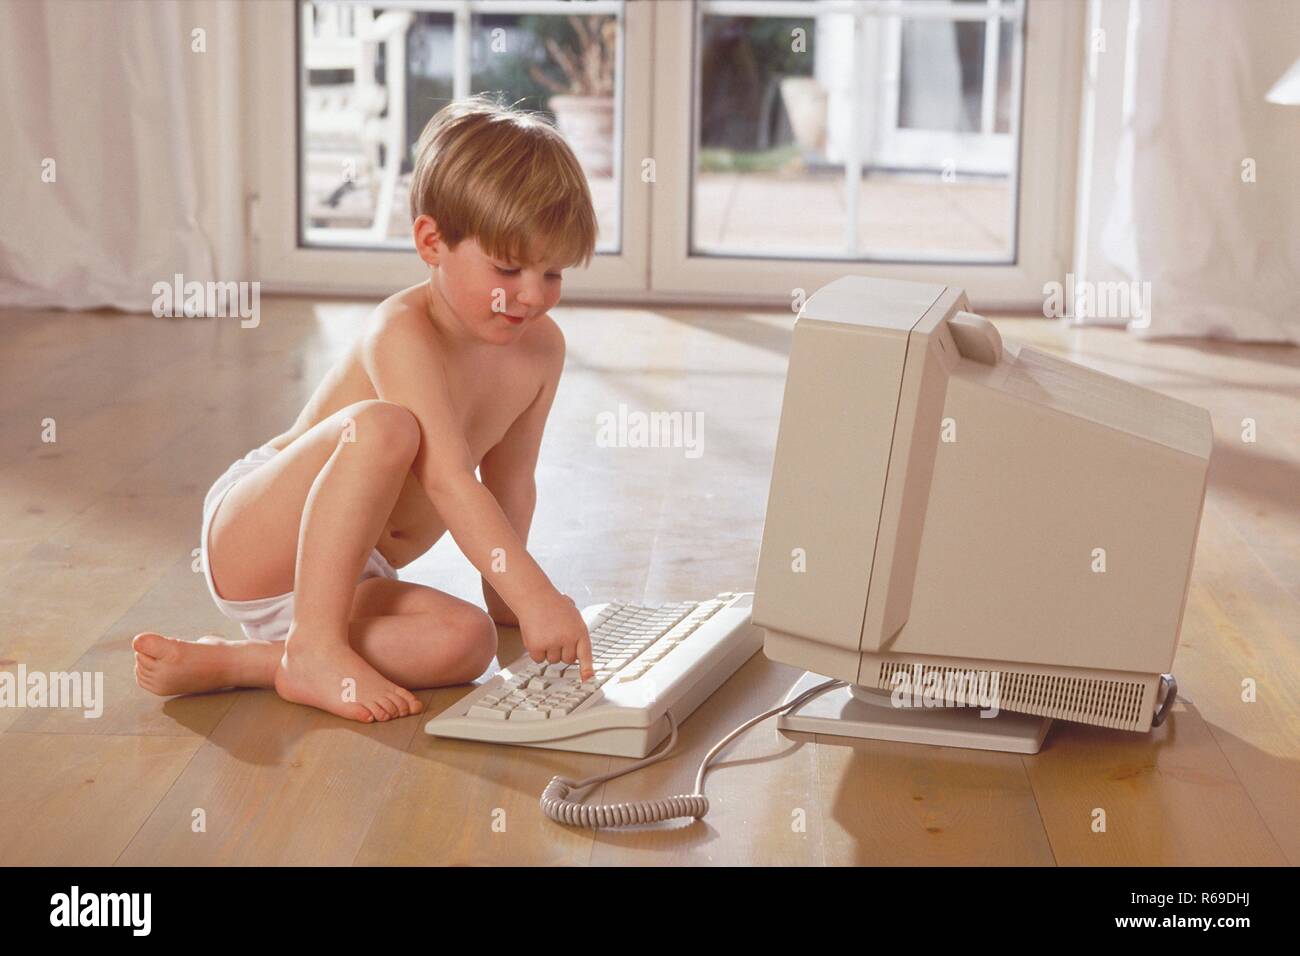 Porträt, Innenraum, 6-jaehriger blonder Junge nur mit Unterhose bekleidet sitzt mit dem Holzboden und spielt am Computer Stockfoto